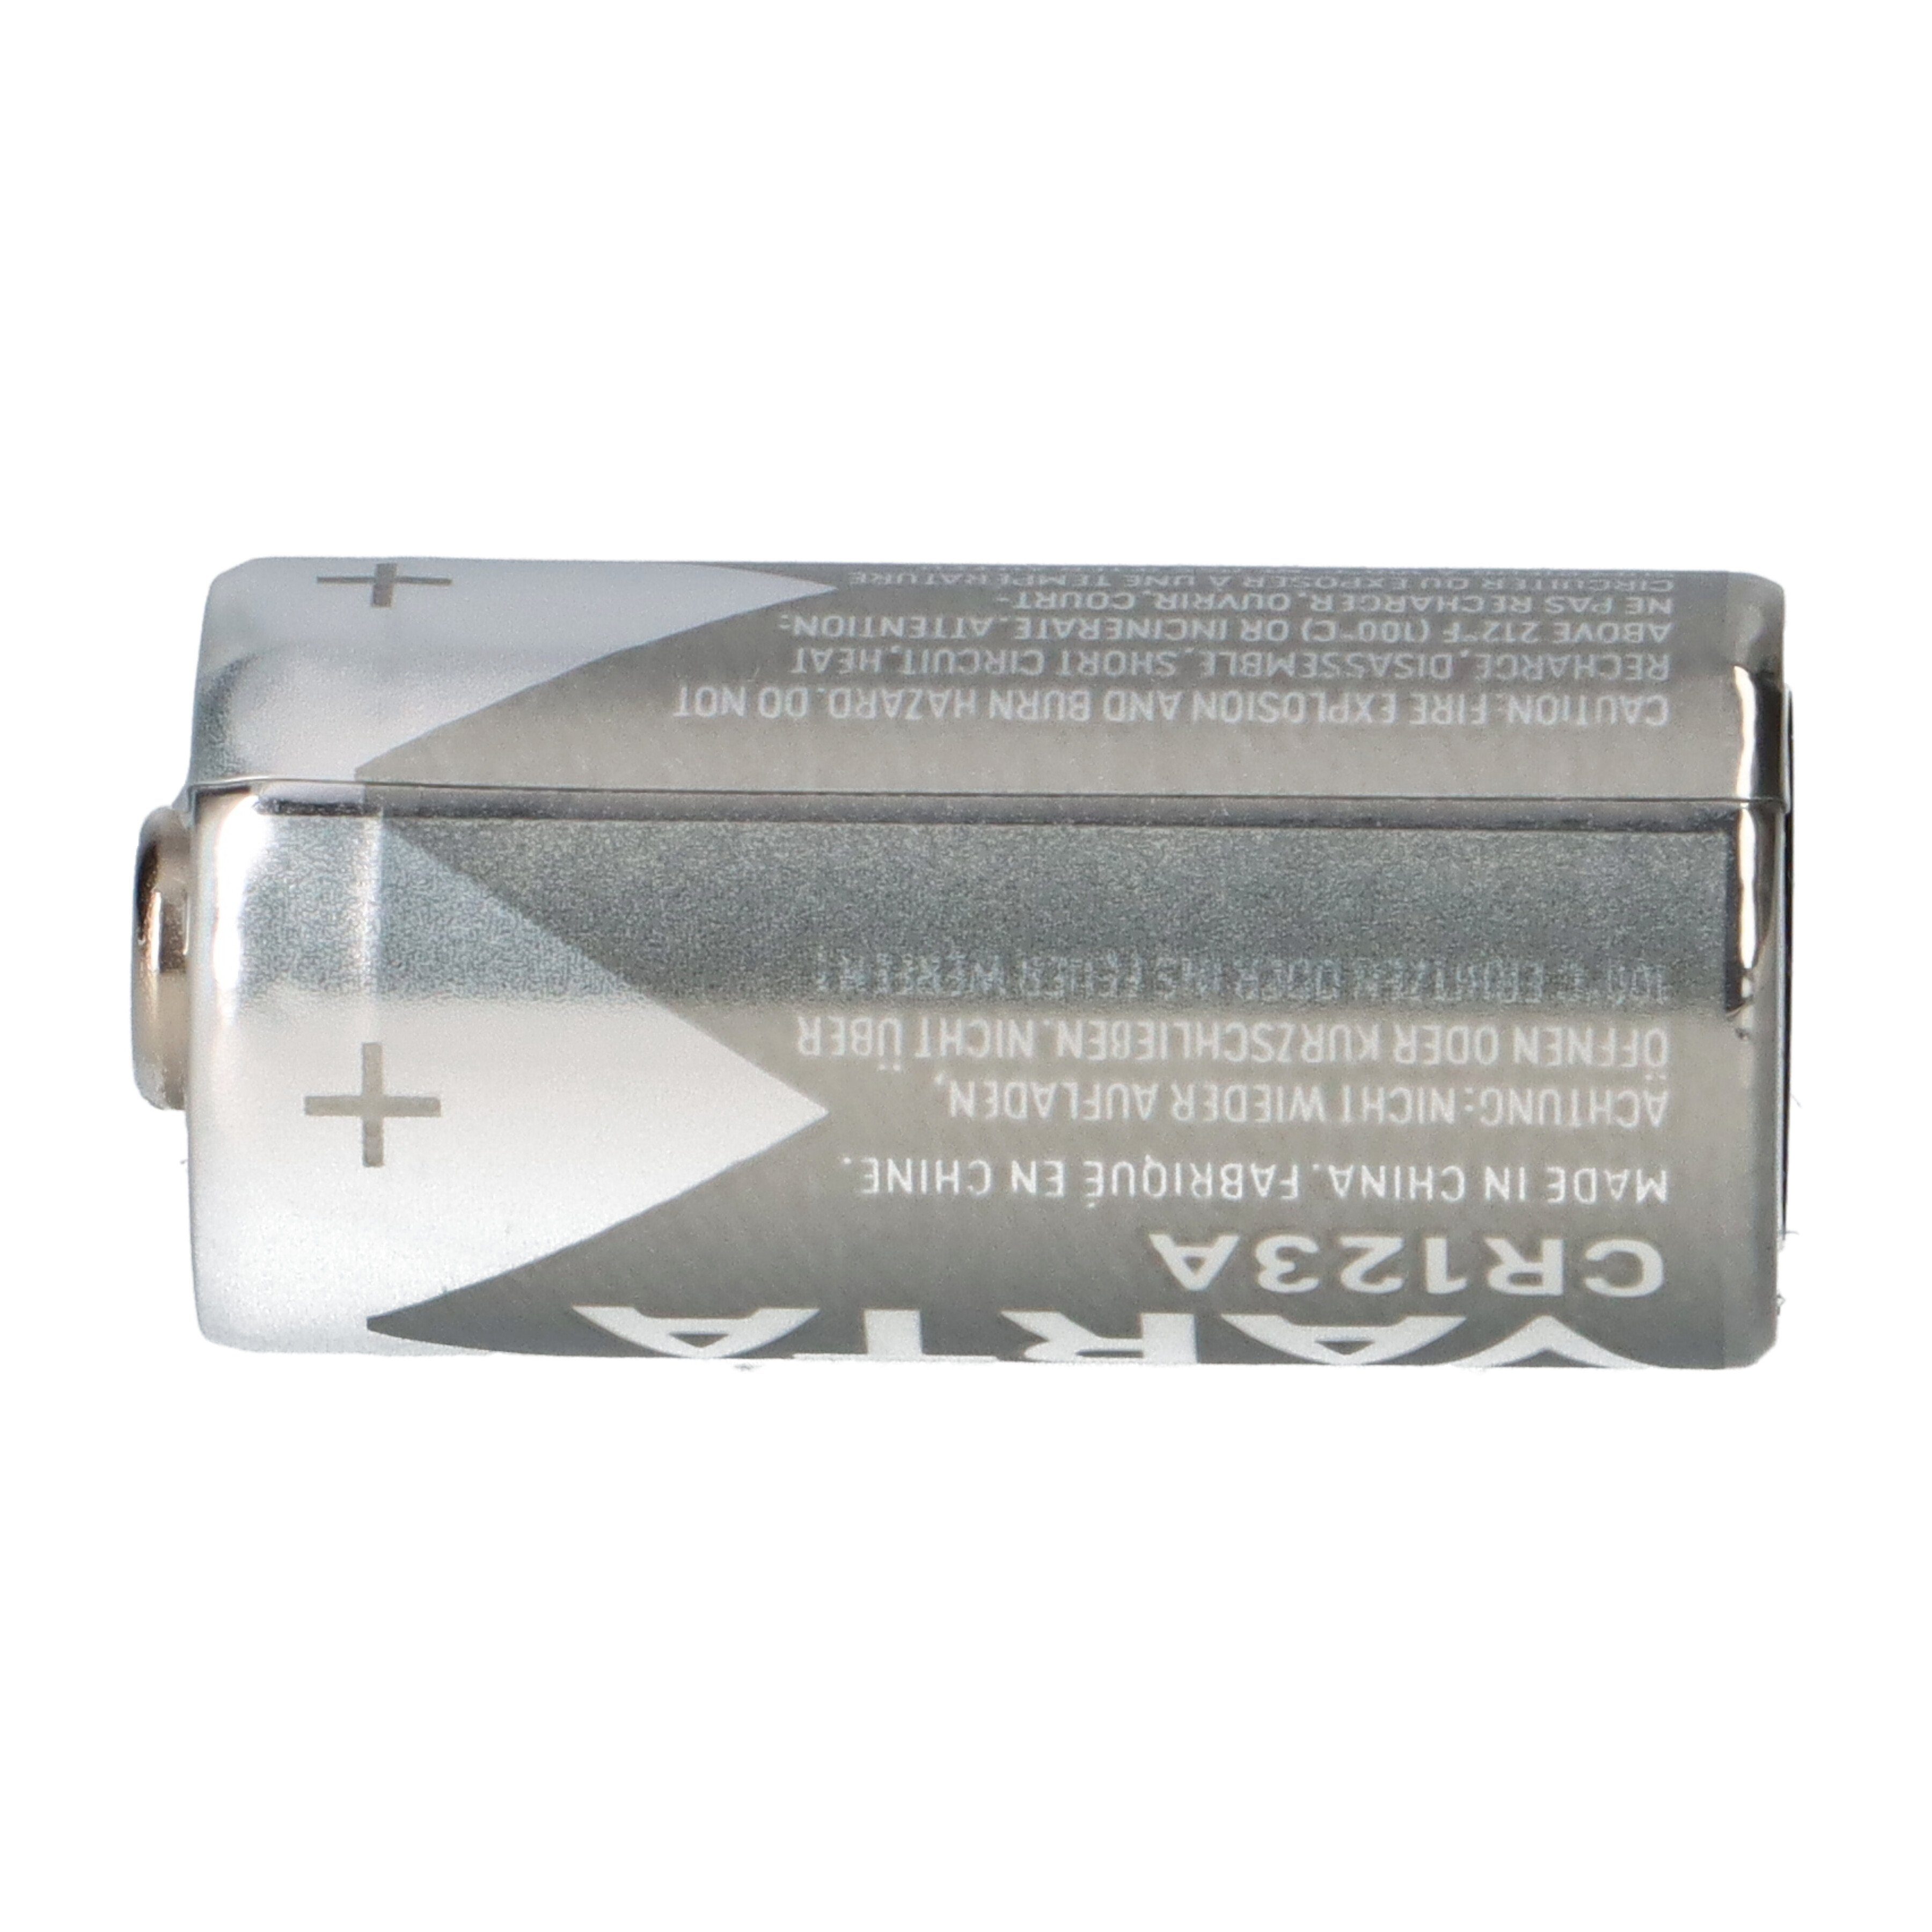 VARTA 10x Batterie Lithium 3V Blister 1er Photobatterie 1480mAh CR123A Varta